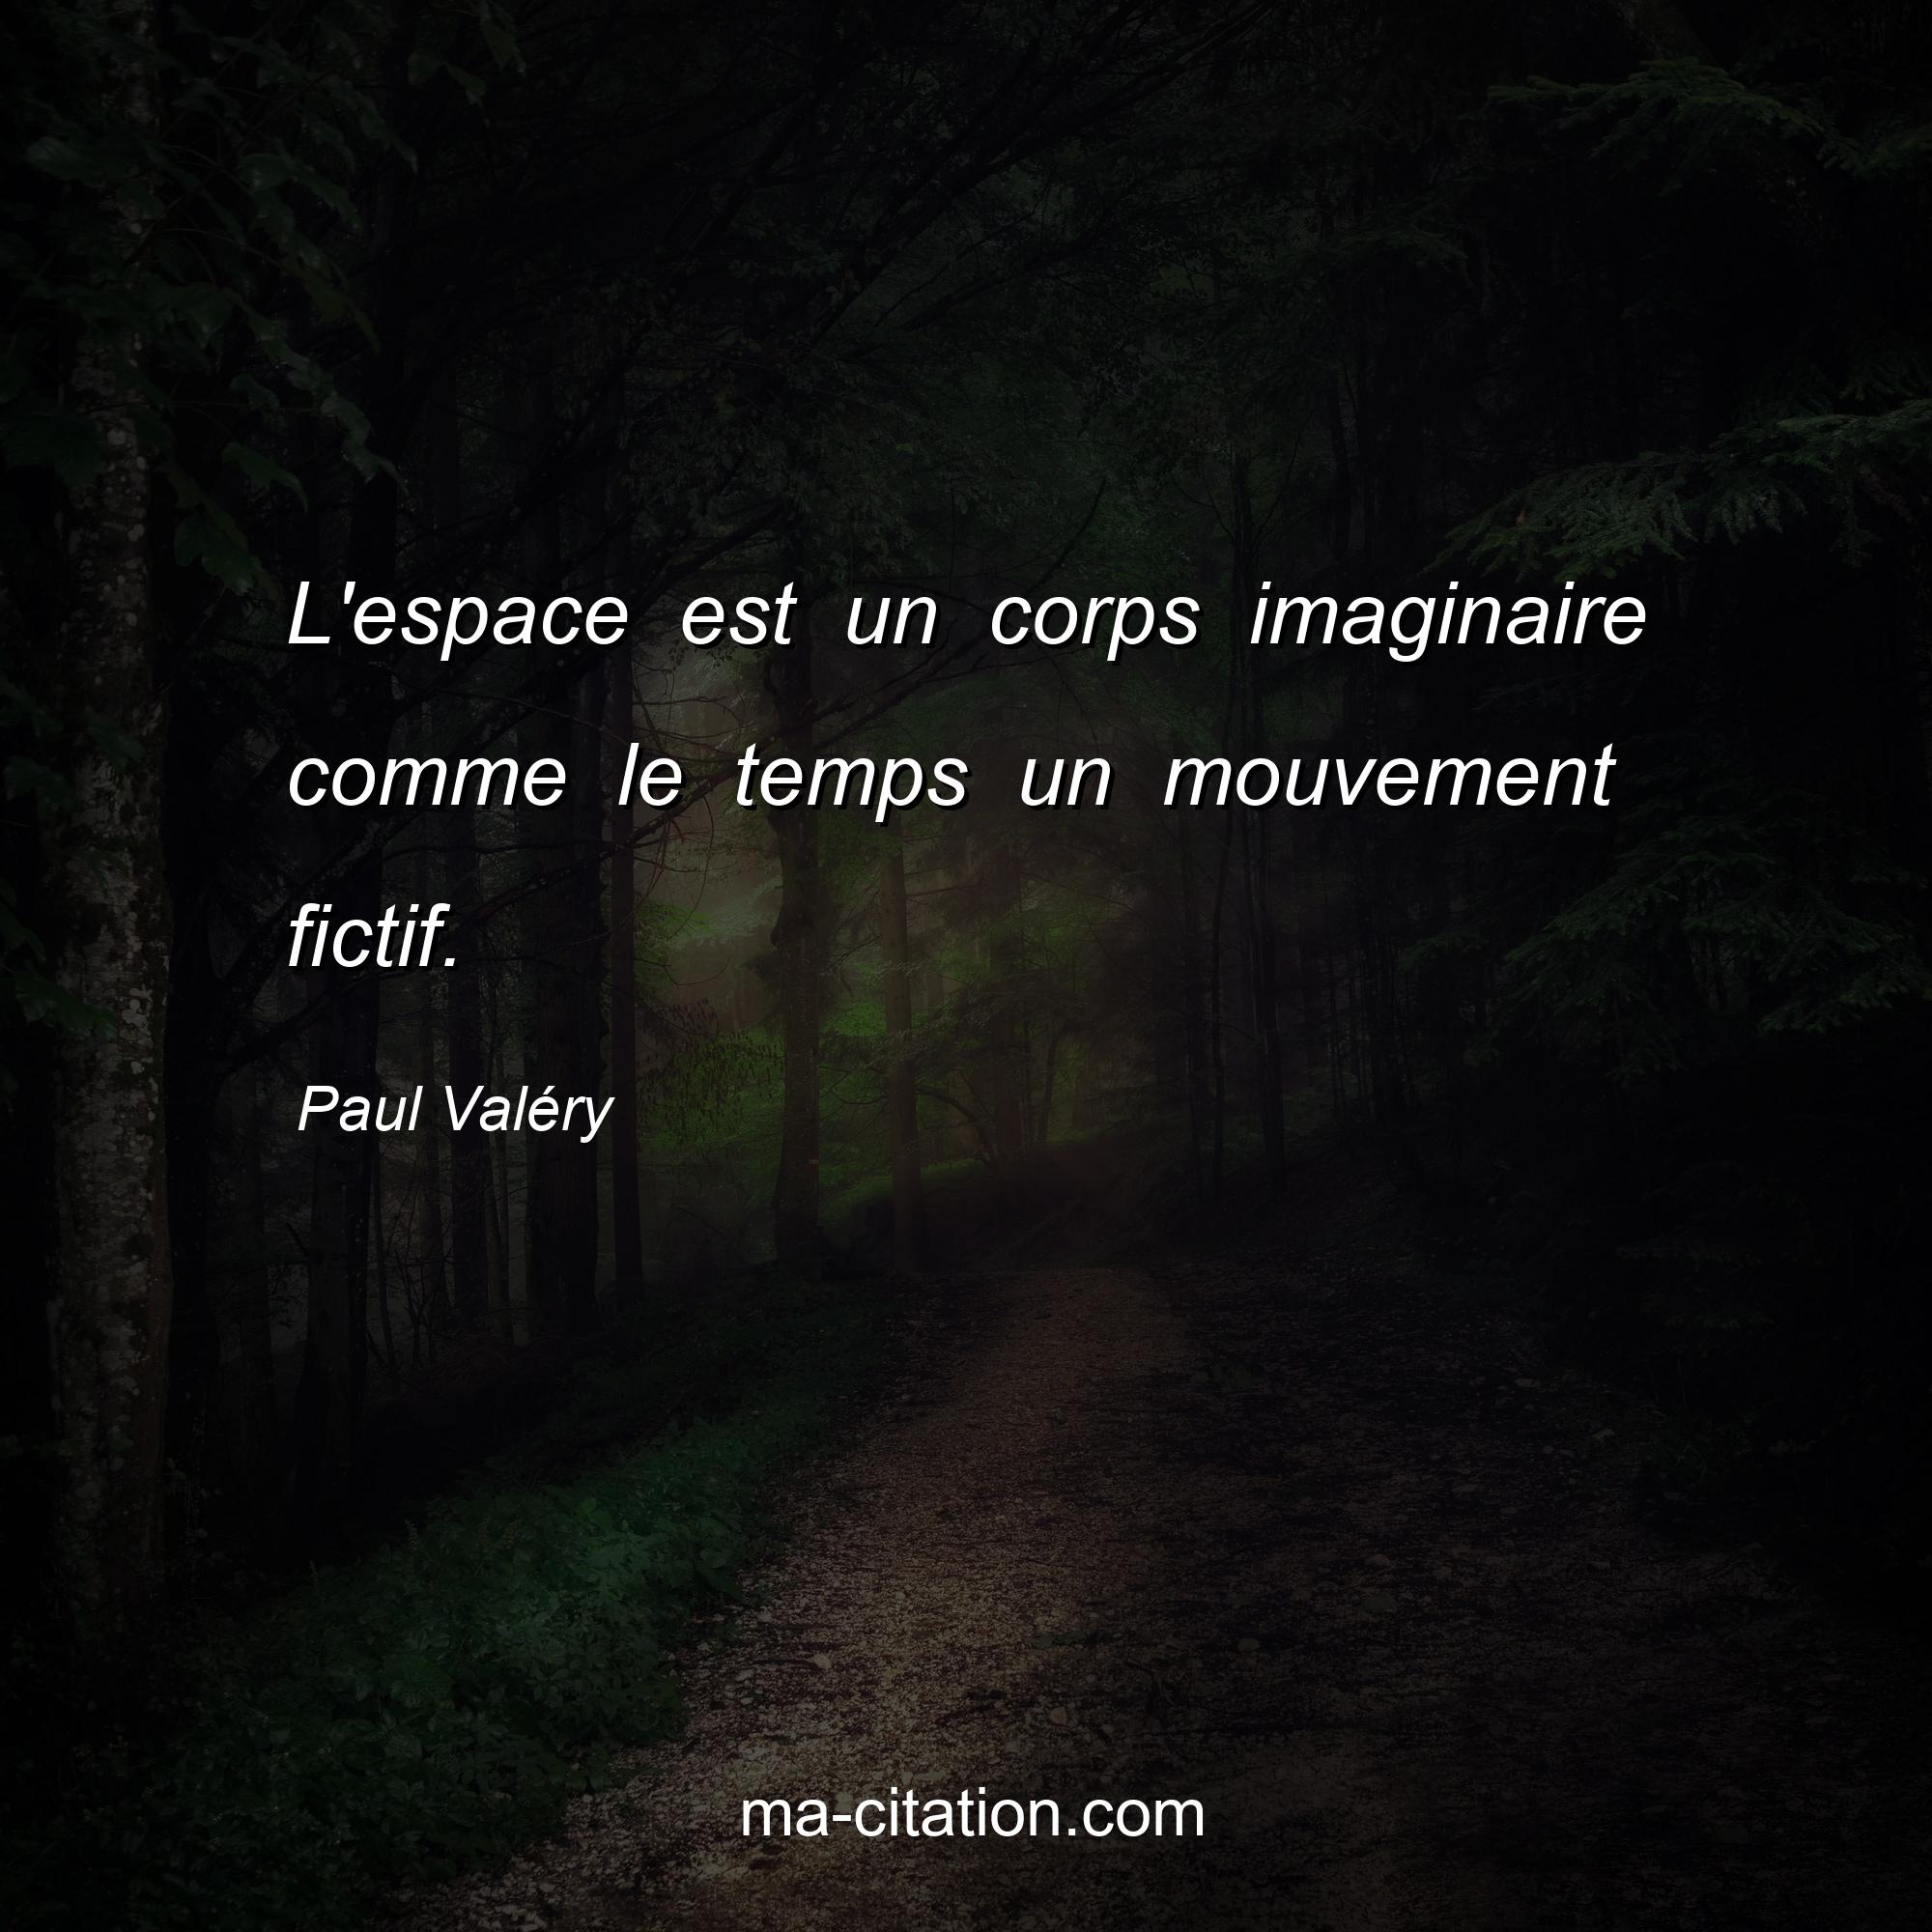 Paul Valéry : L'espace est un corps imaginaire comme le temps un mouvement fictif.